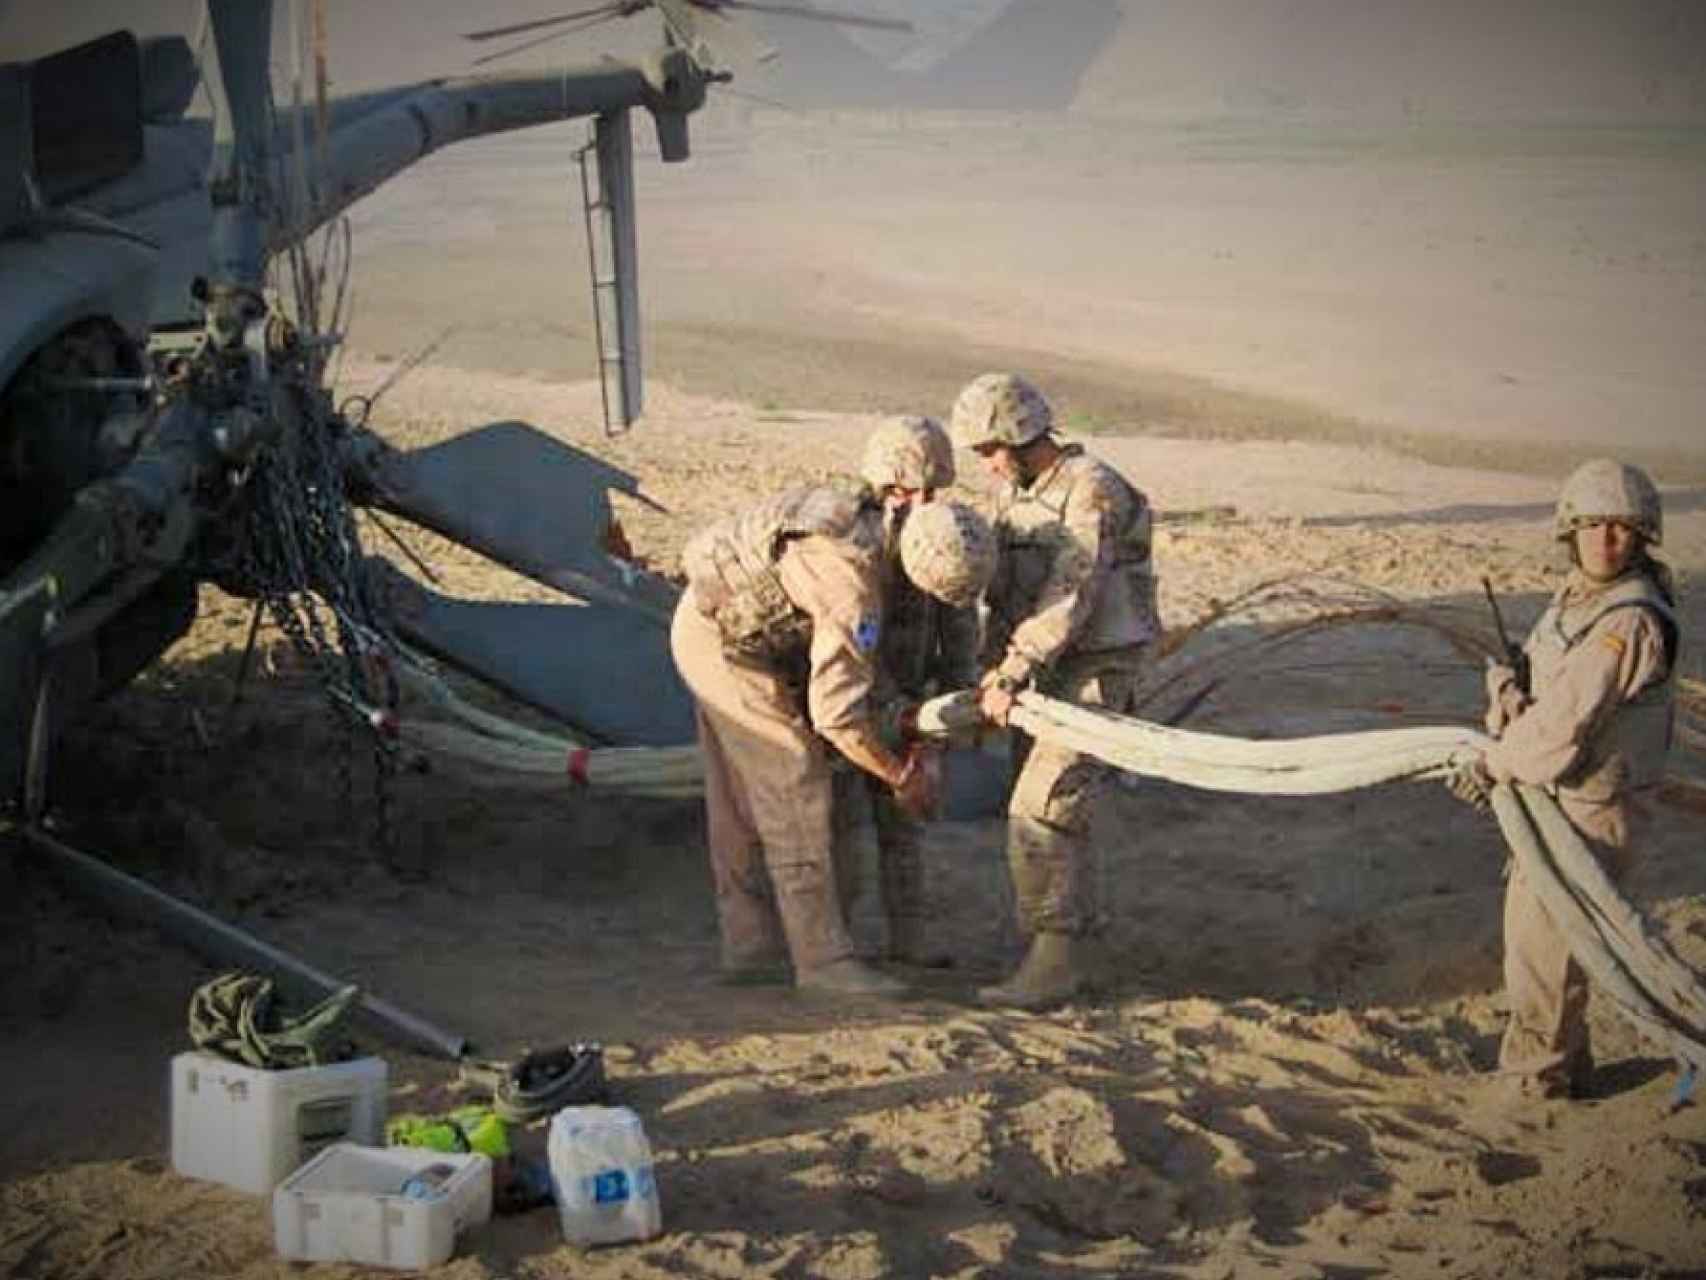 Los soldados tenían que desmontar las partes sensibles del helicóptero.